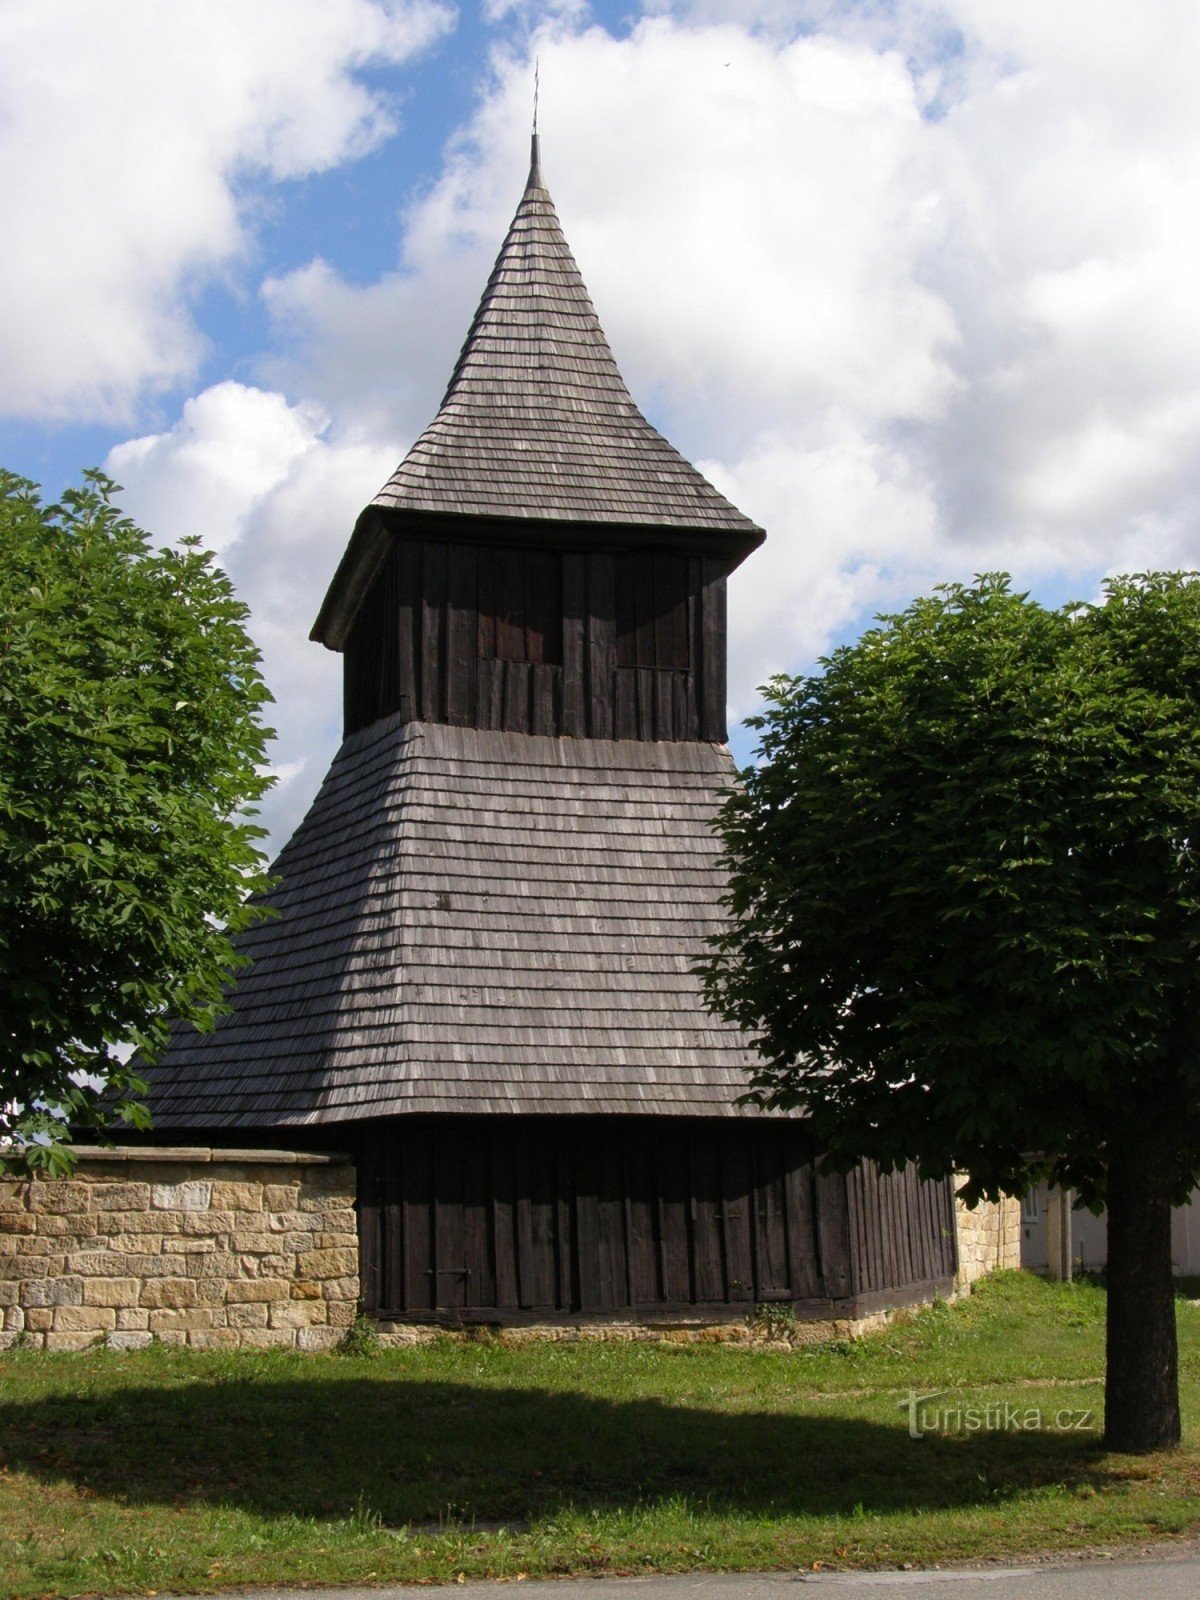 Vysočany - Holzkirche St. Margaret mit einem Glockenturm